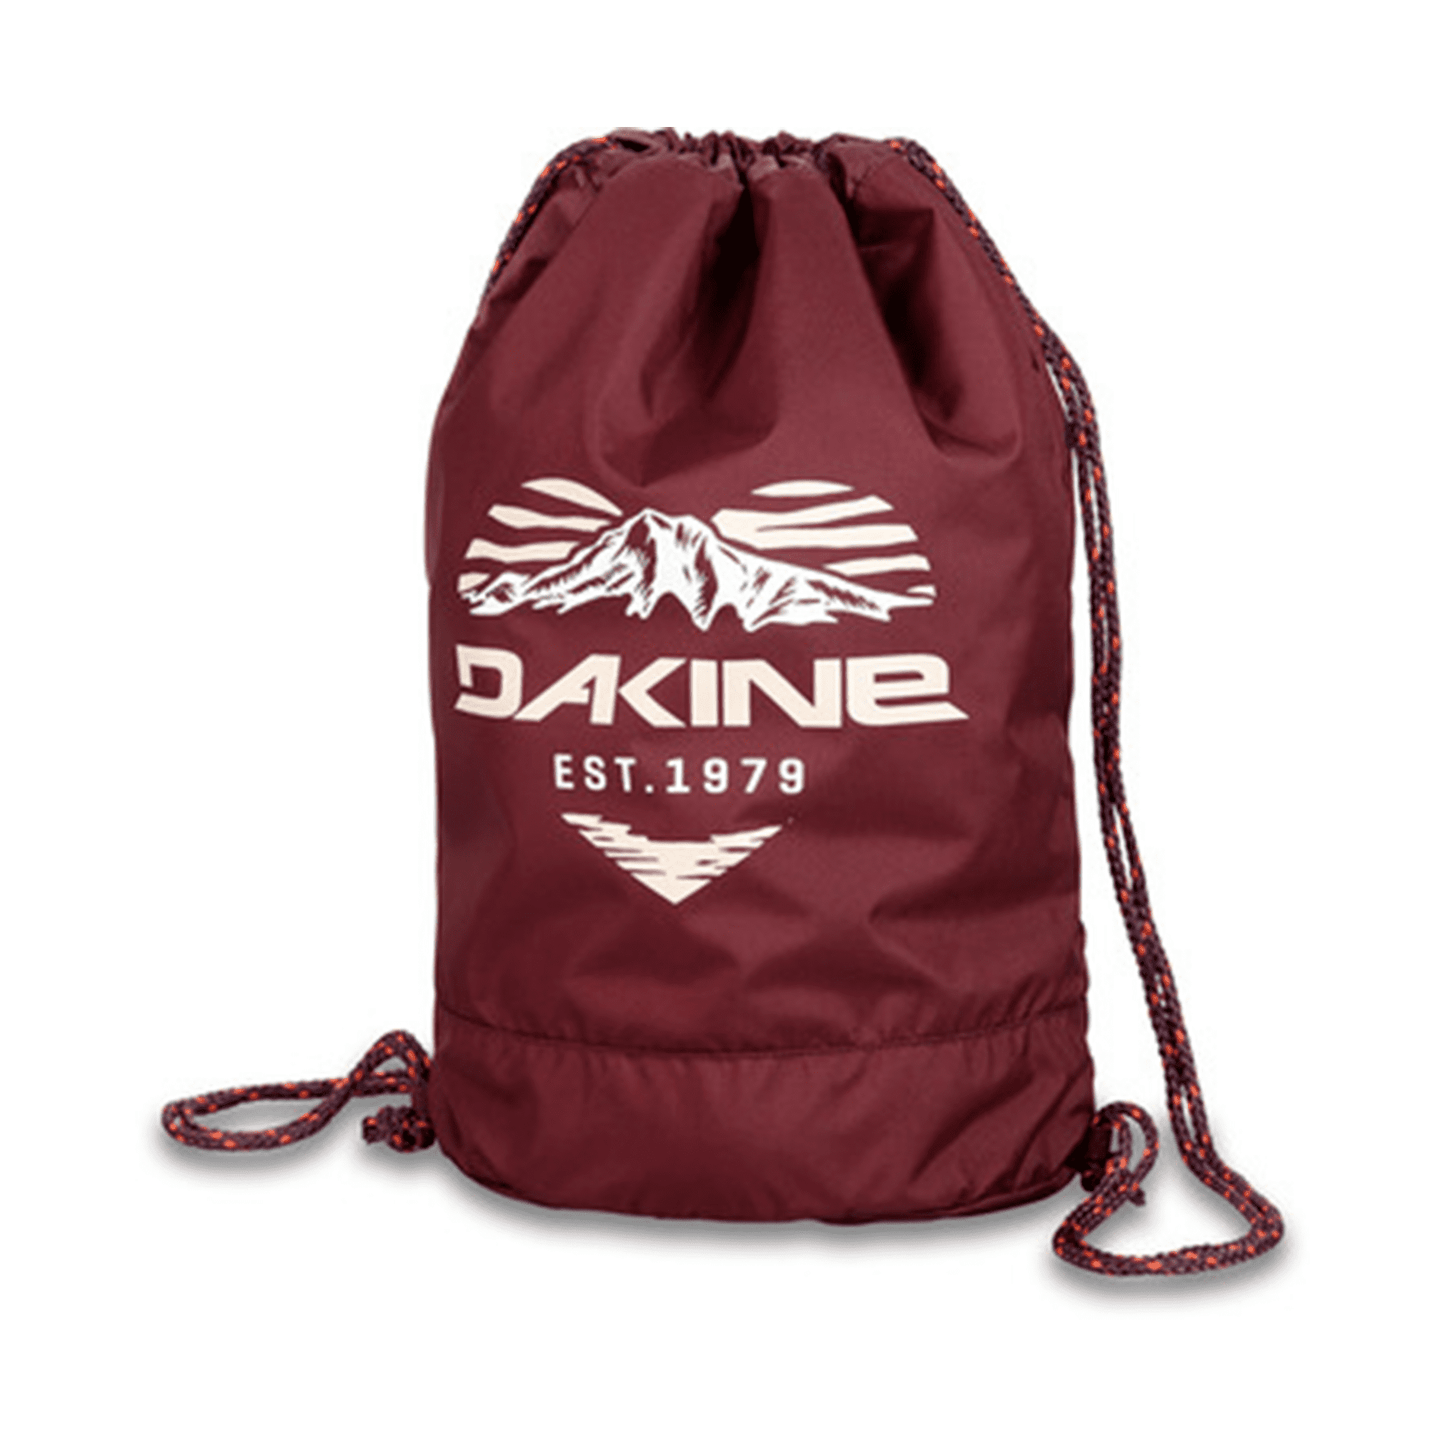 Dakine Cinch Pack 16L - Port Red